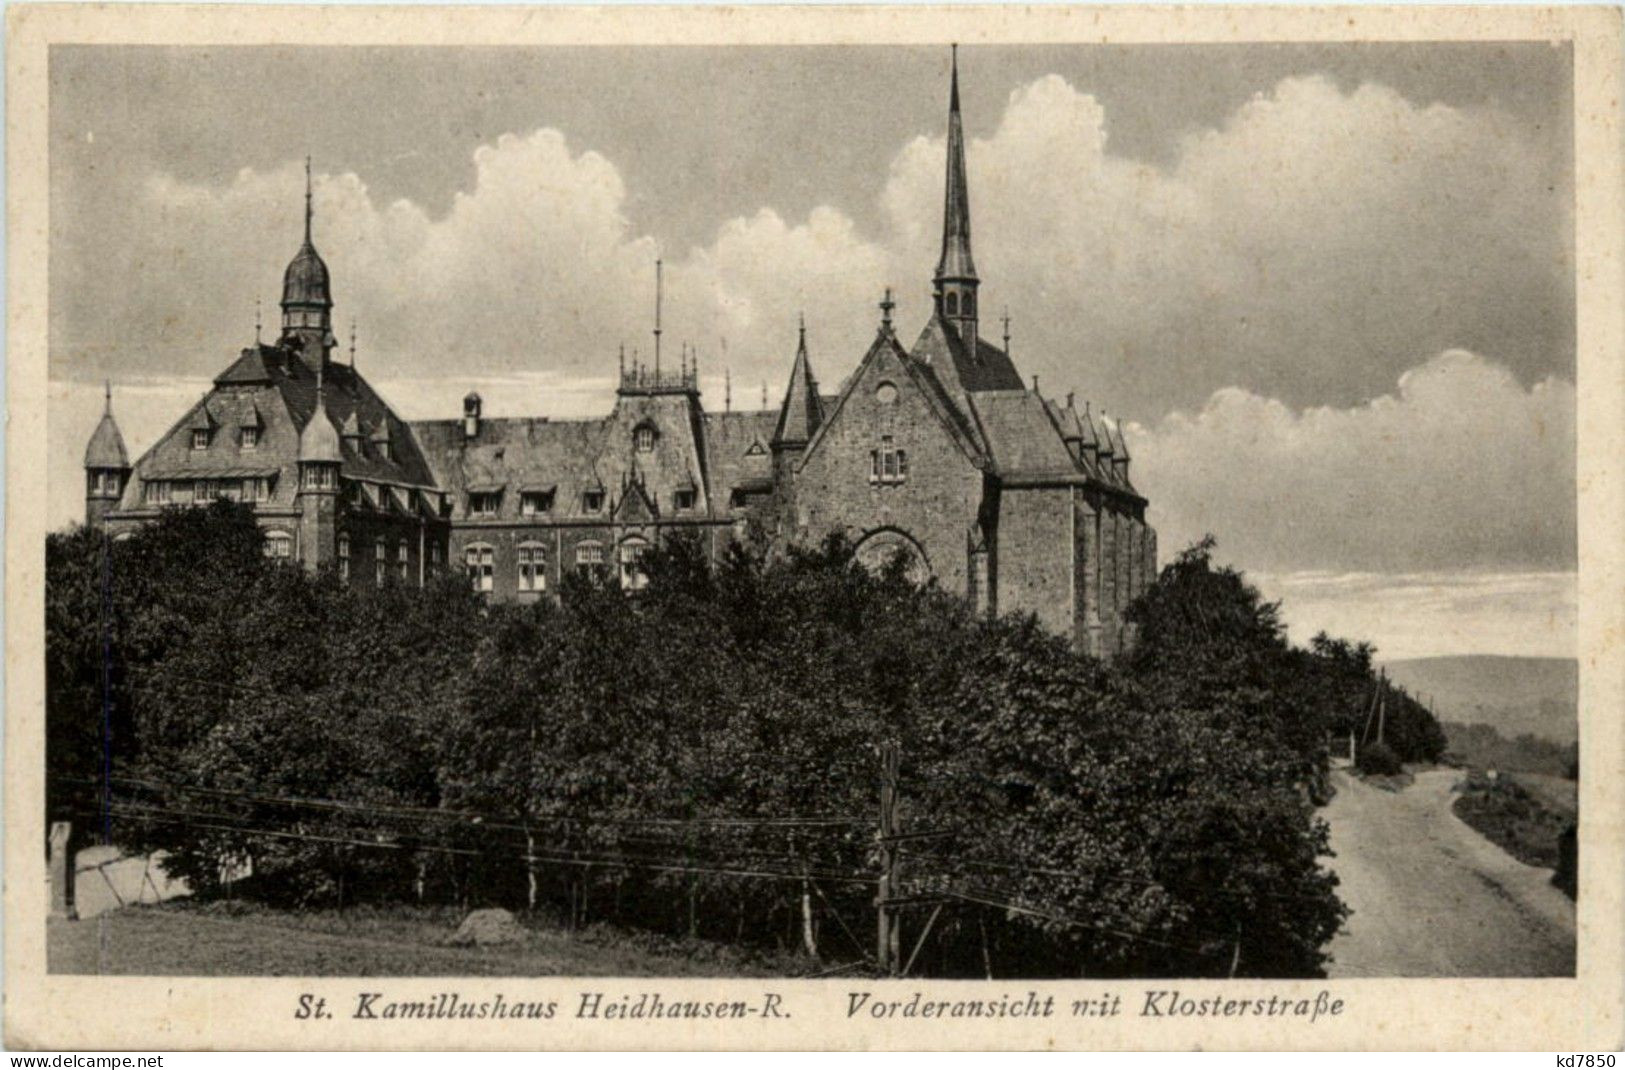 Heidhauen - St. Kamillushaus - Essen